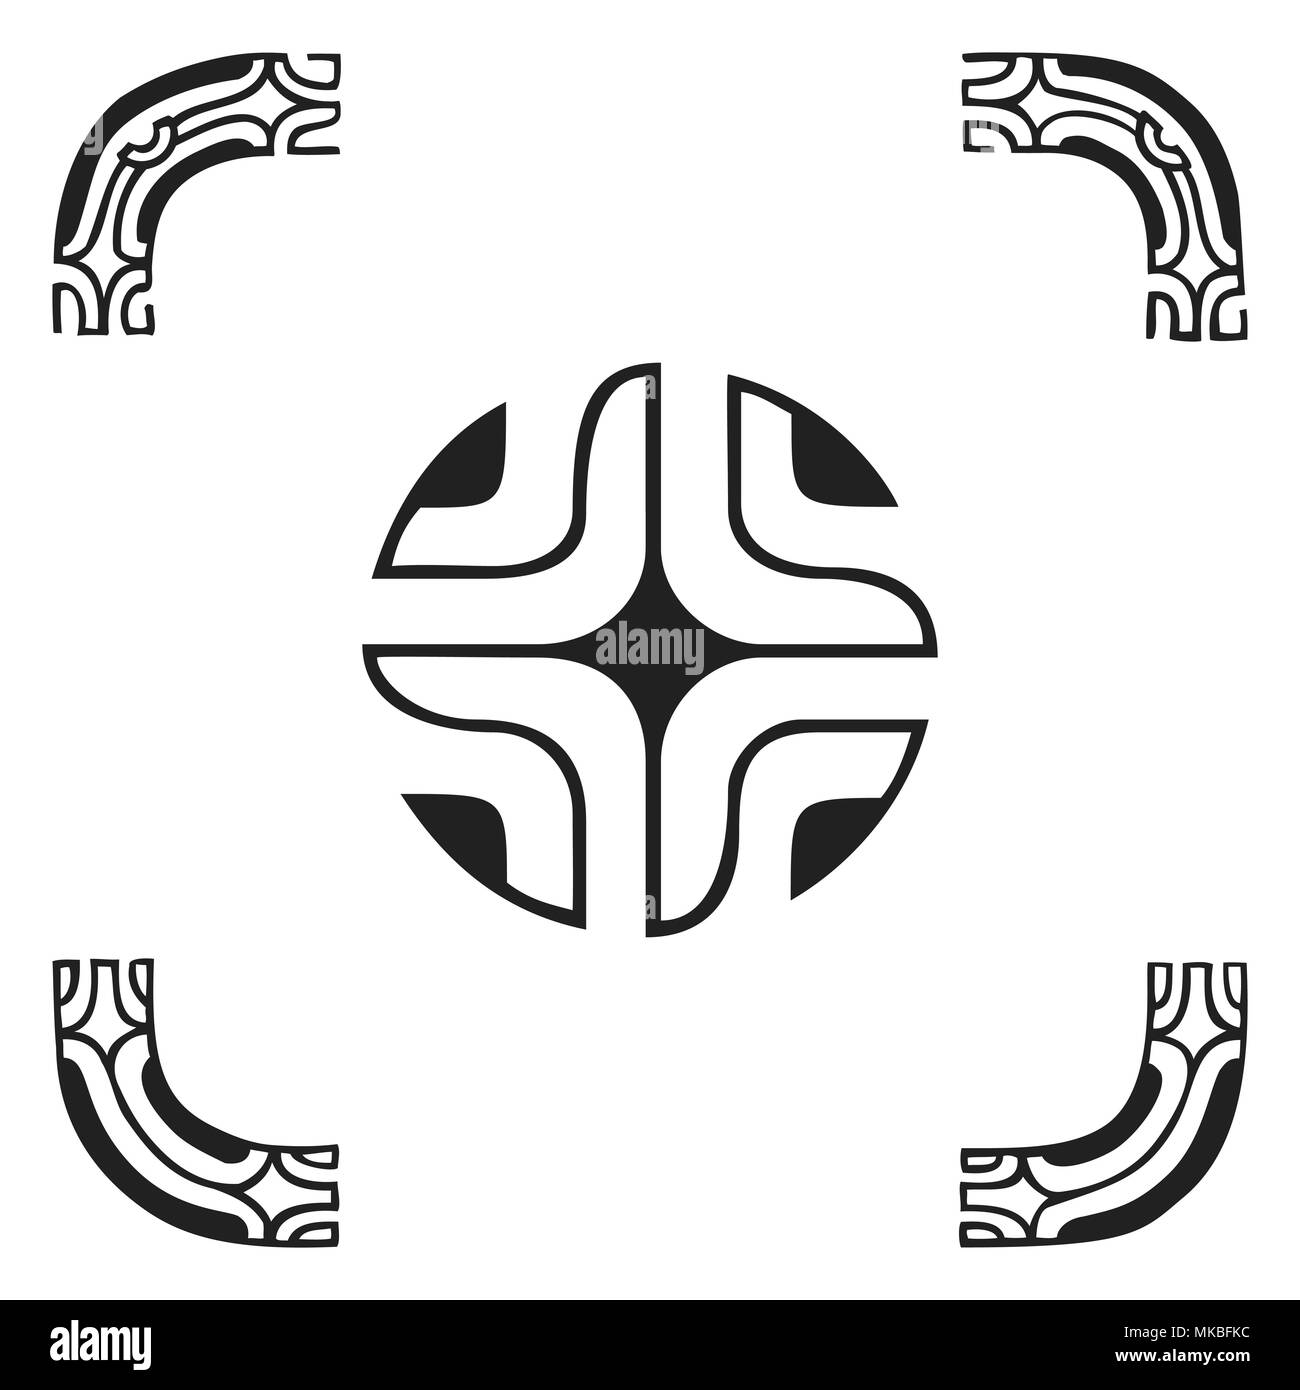 Vecteur d'encre monochrome noir indigènes à la main art populaire polynésien cercle croix Symboles Marquisiens, les bras de Tiki illustration isolé sur fond blanc Illustration de Vecteur